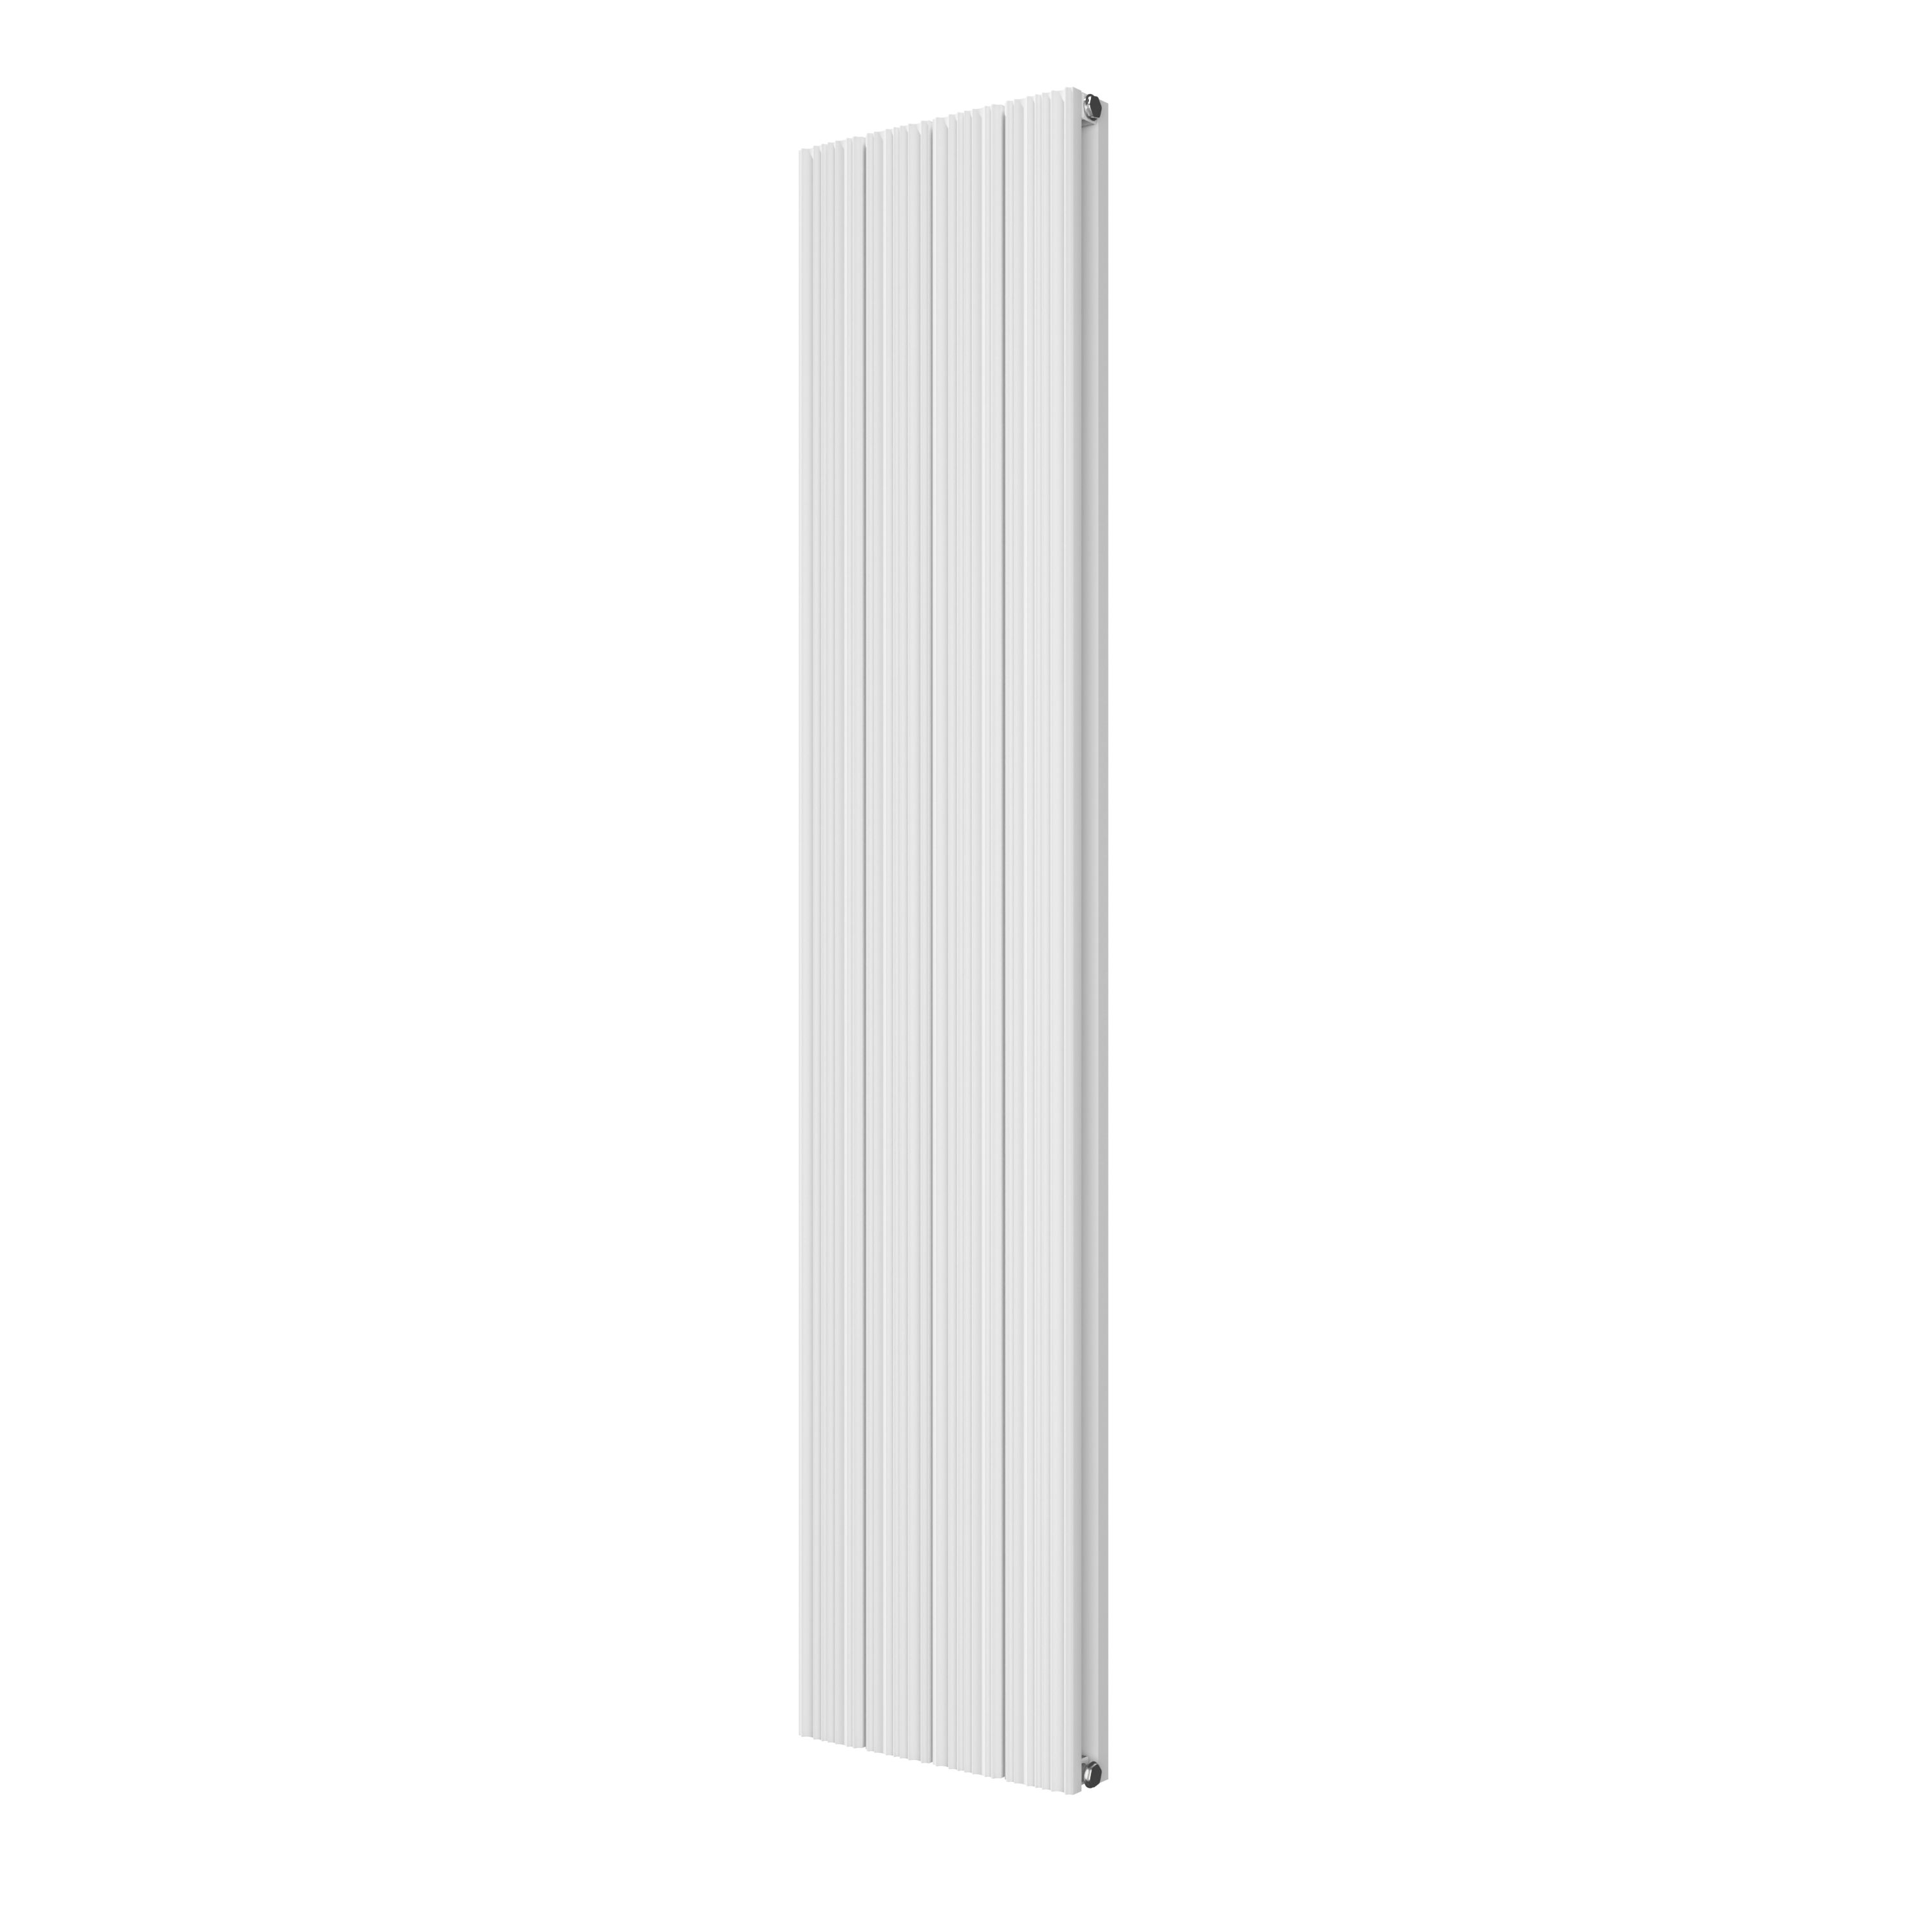 VIPERA Mares dubbele handdoekradiator 37,5 x 180 cm centrale verwarming mat wit zij- en middenaansluiting 1,247W